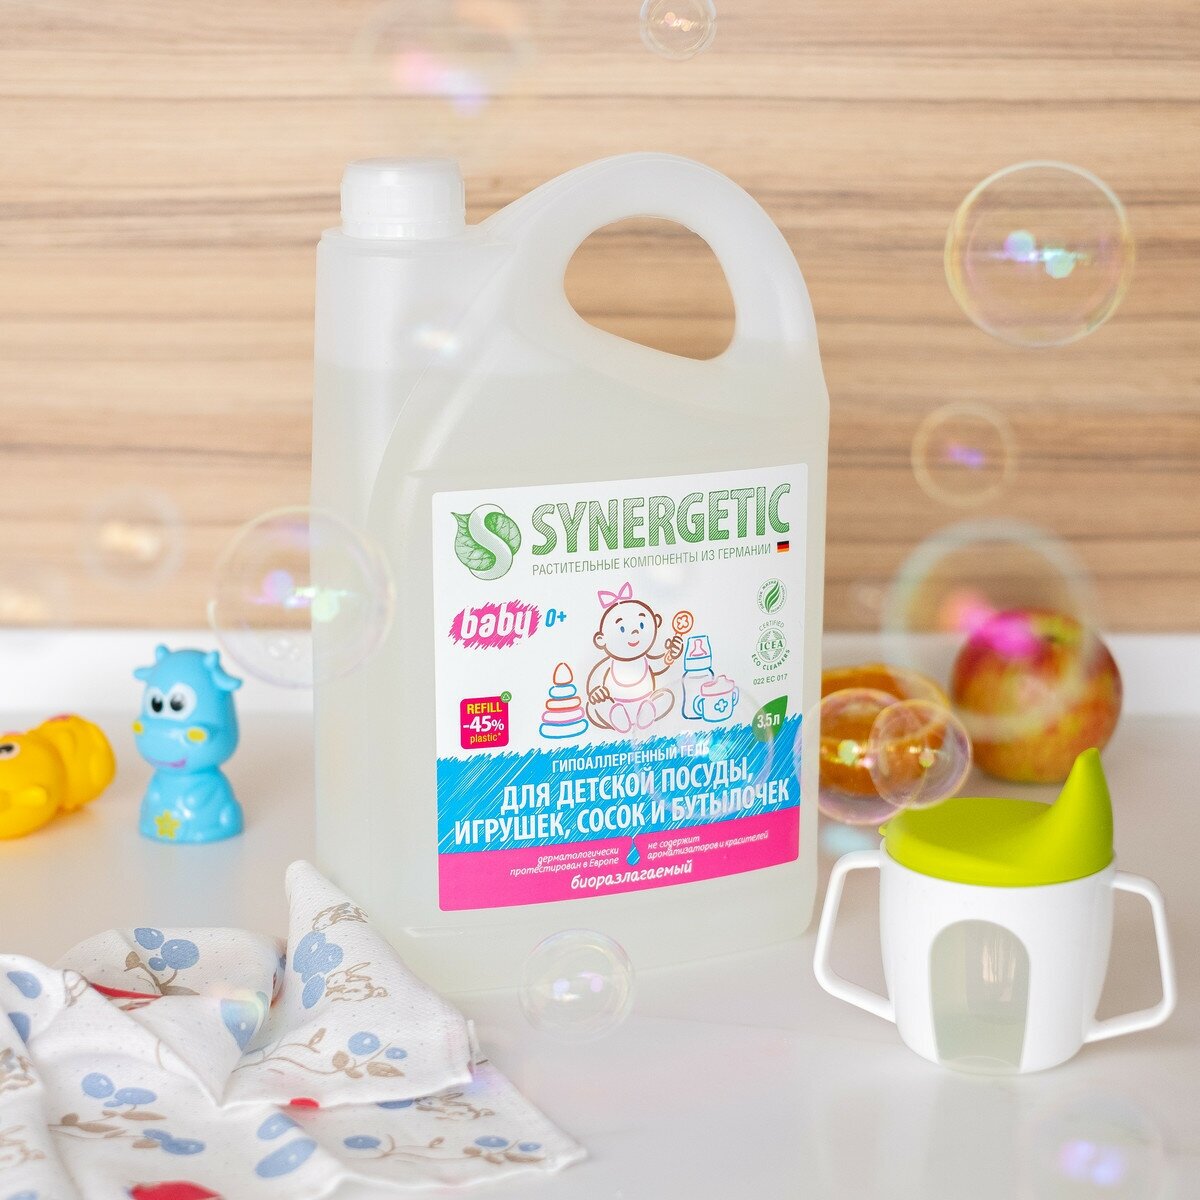 Synergetic гель для мытья детской посуды, игрушек, сосок и бутылочек Baby сменный блок, 3.5 л, 3.73 кг - фотография № 7